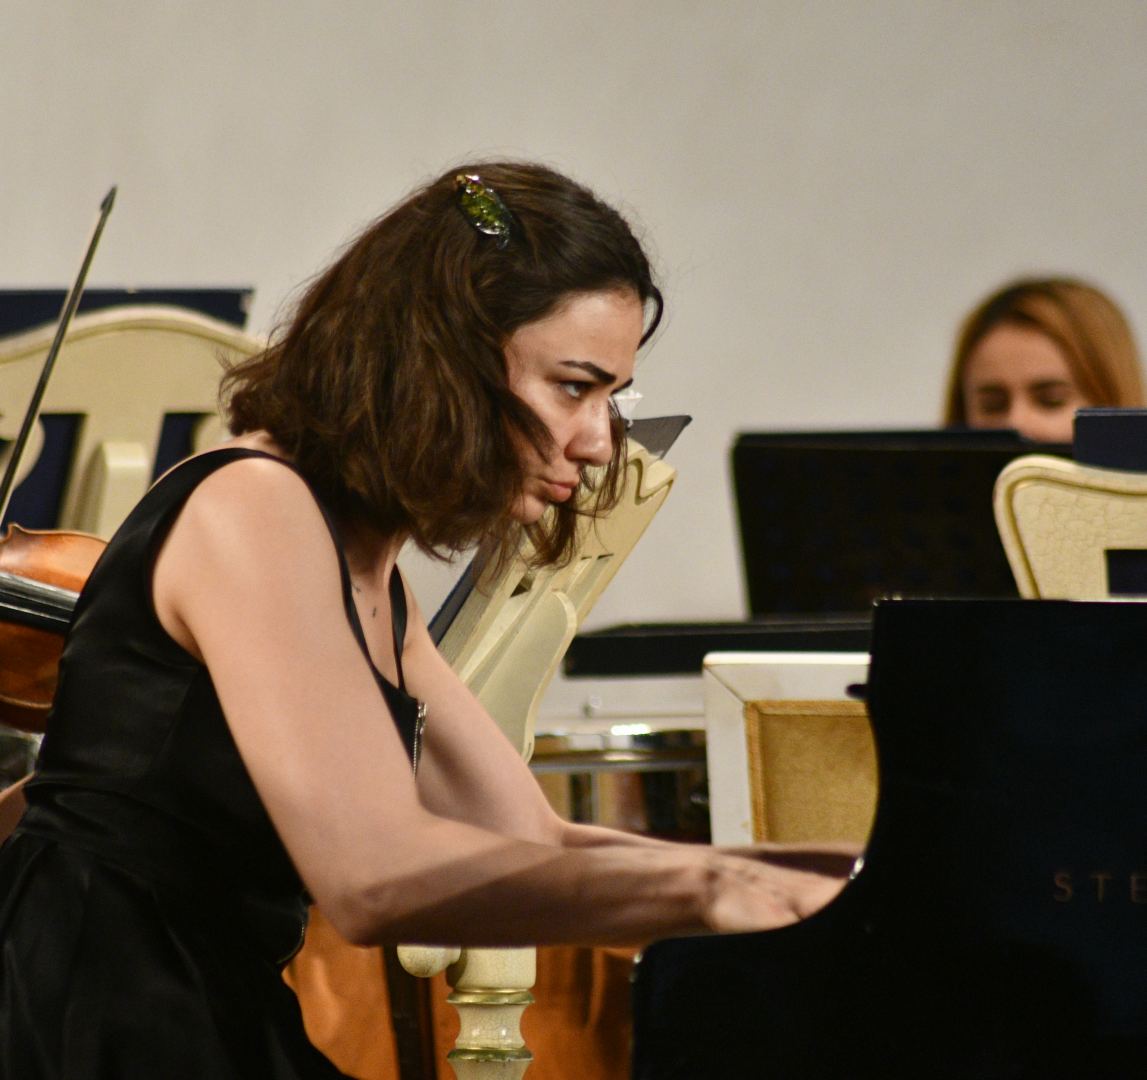 Лето в Бакинской филармонии – раскрывая новые таланты (ФОТО)